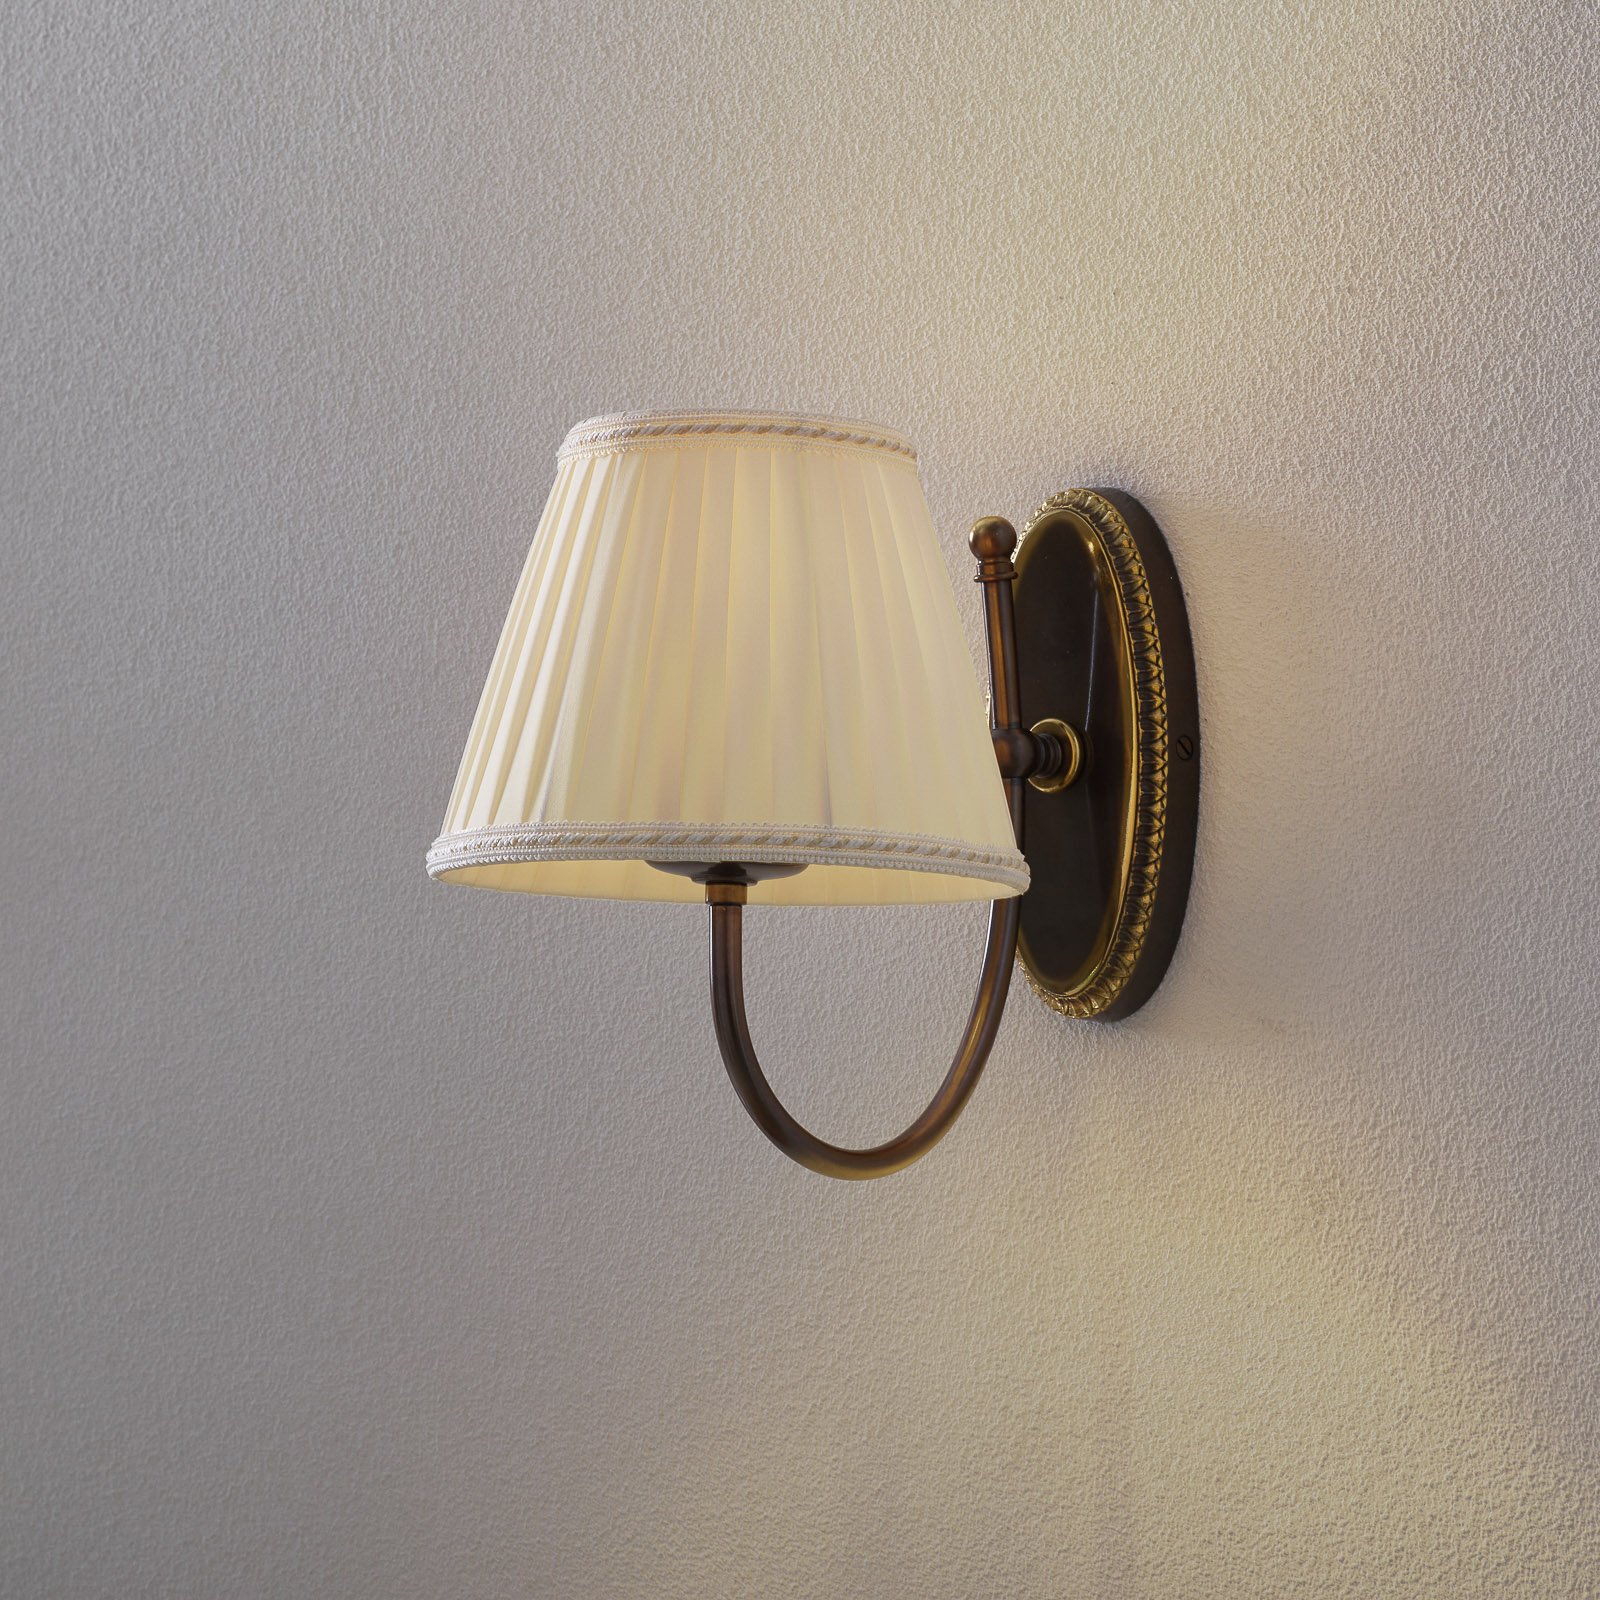 Classic - lampa ścienna z wygiętym ramieniem